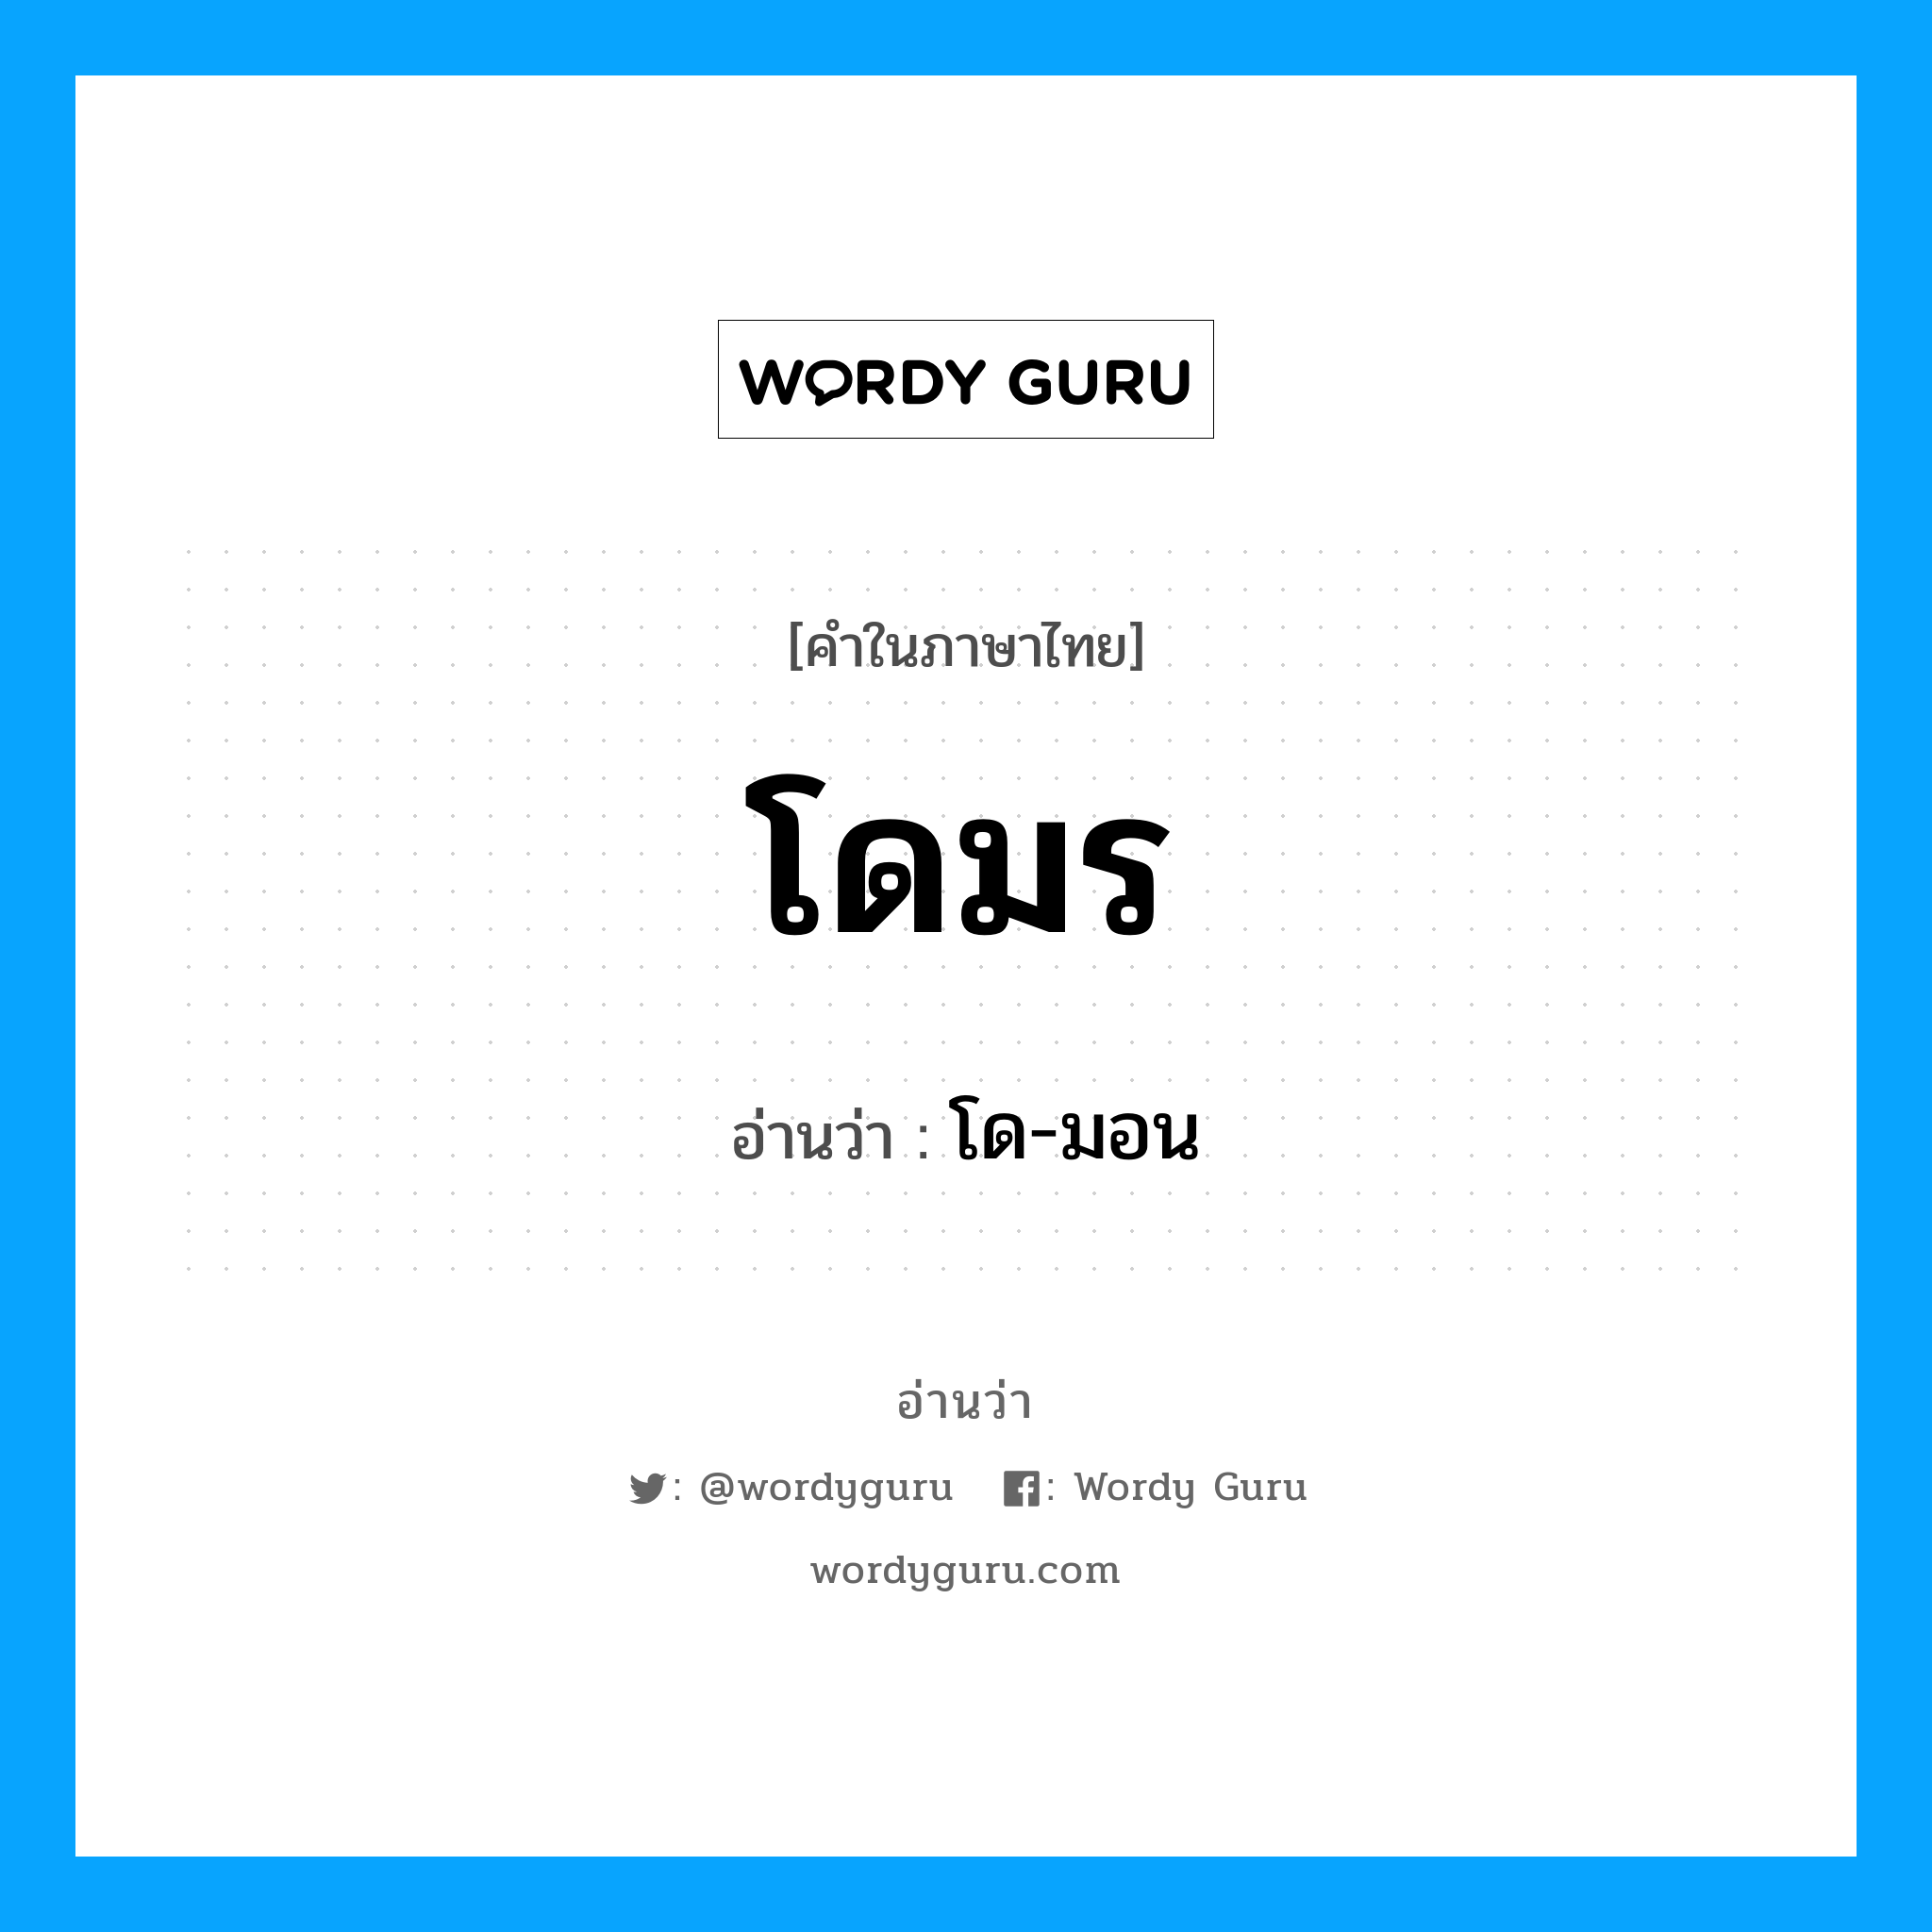 โด-มอน เป็นคำอ่านของคำไหน?, คำในภาษาไทย โด-มอน อ่านว่า โดมร